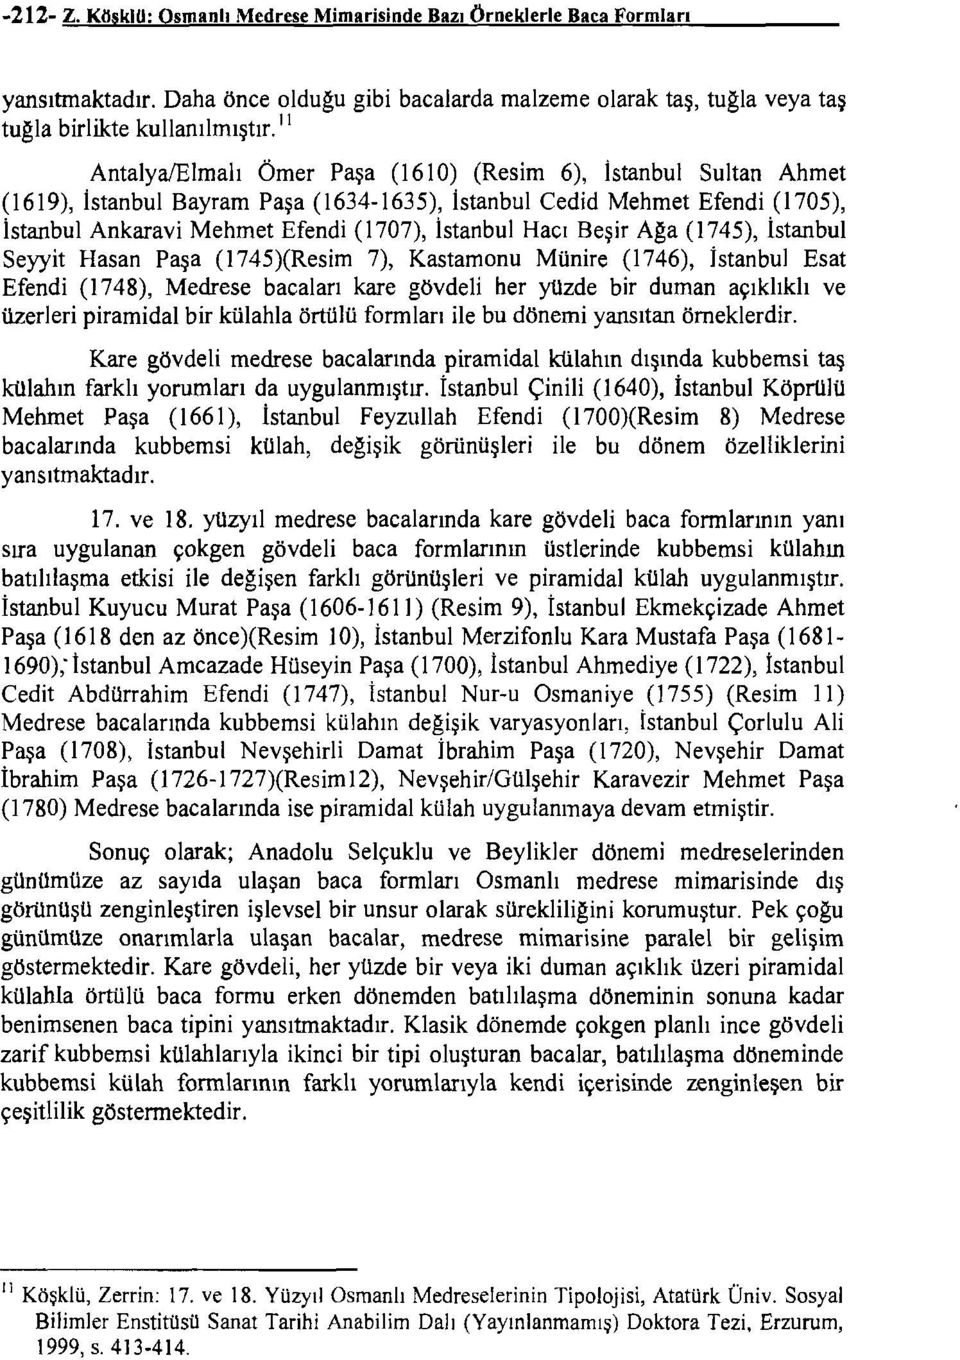 İstanbul Hacı Beşir Aga (1745), İstanbul Seyyit Hasan Paşa (1745)(Resim 7), Kastamonu Münire (1746), İstanbul Esat Efendi (1748), Medrese bacaları kare gövdeli her yüzde bir duman açıklıklı ve